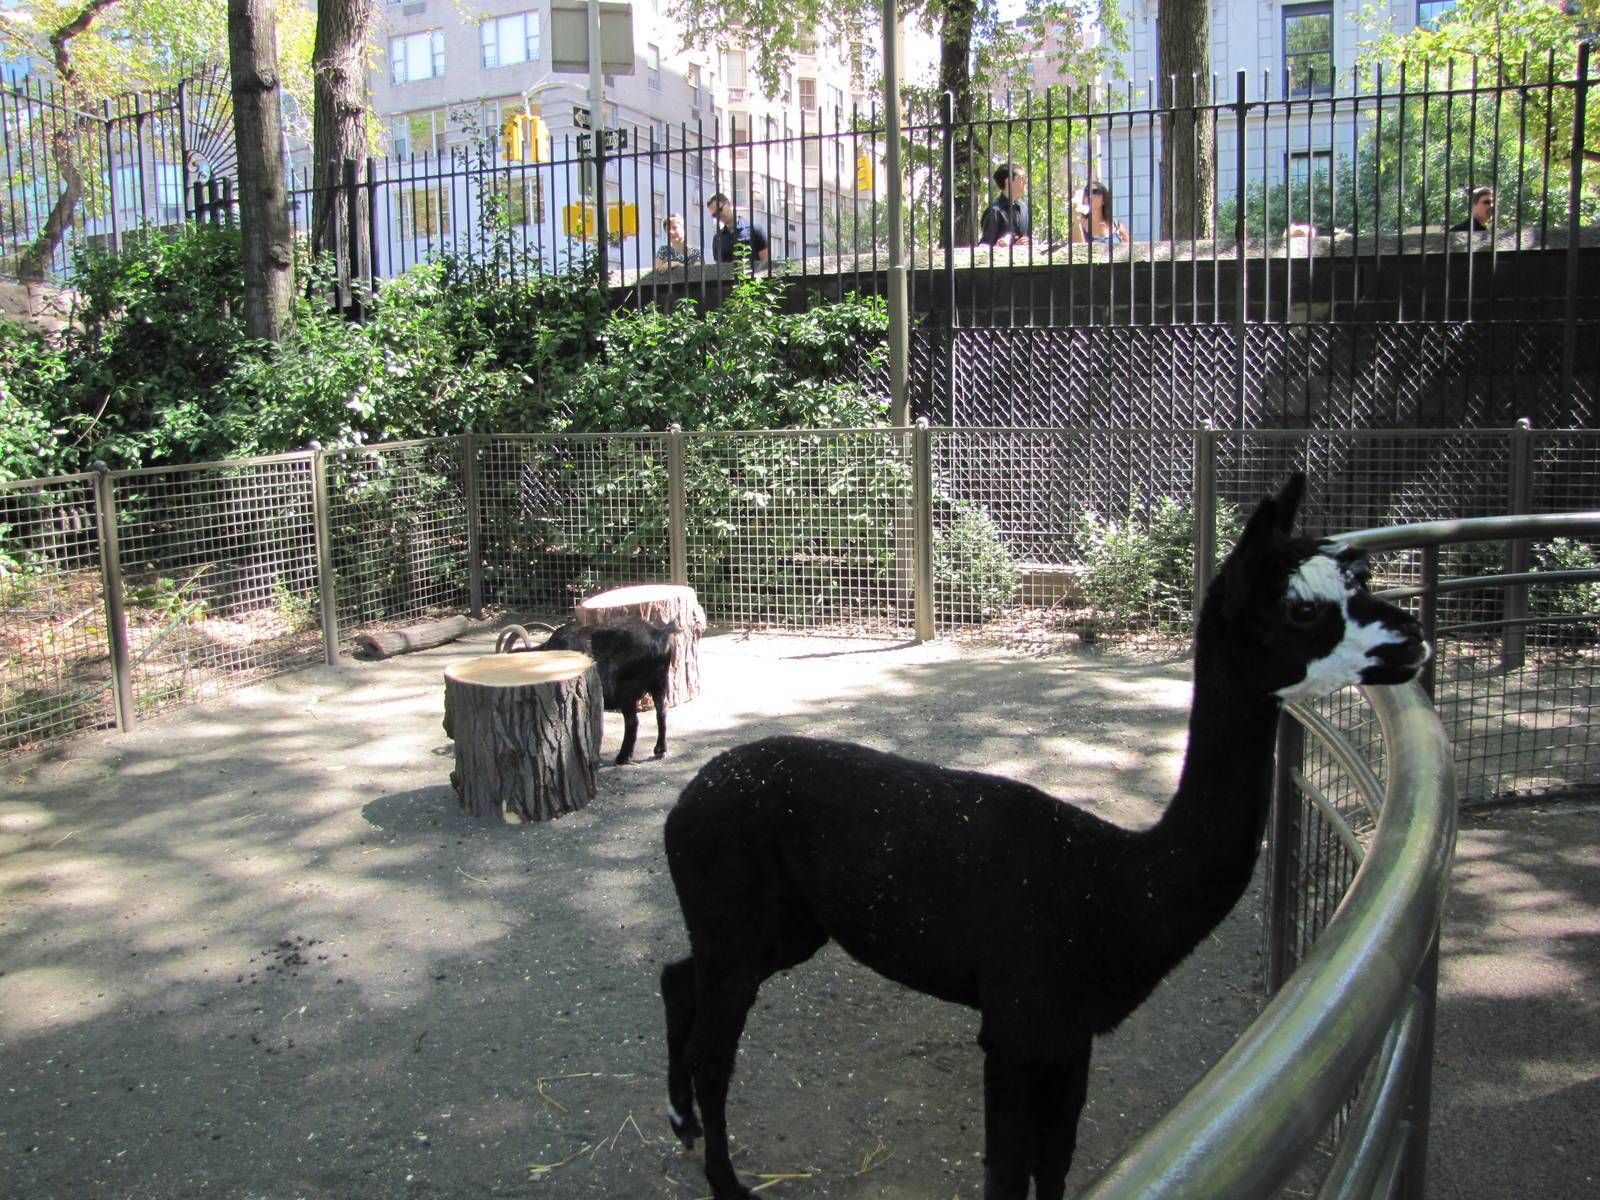 Зоопарка скачает телефон. Зоопарк в Нью-Йорке Центральный парк. Зоопарк центрального парка в Нью-Йорке. Зоопарк в Центральном парке Нью-Йорка. Зоосад в Центральном парке Нью Йорк.